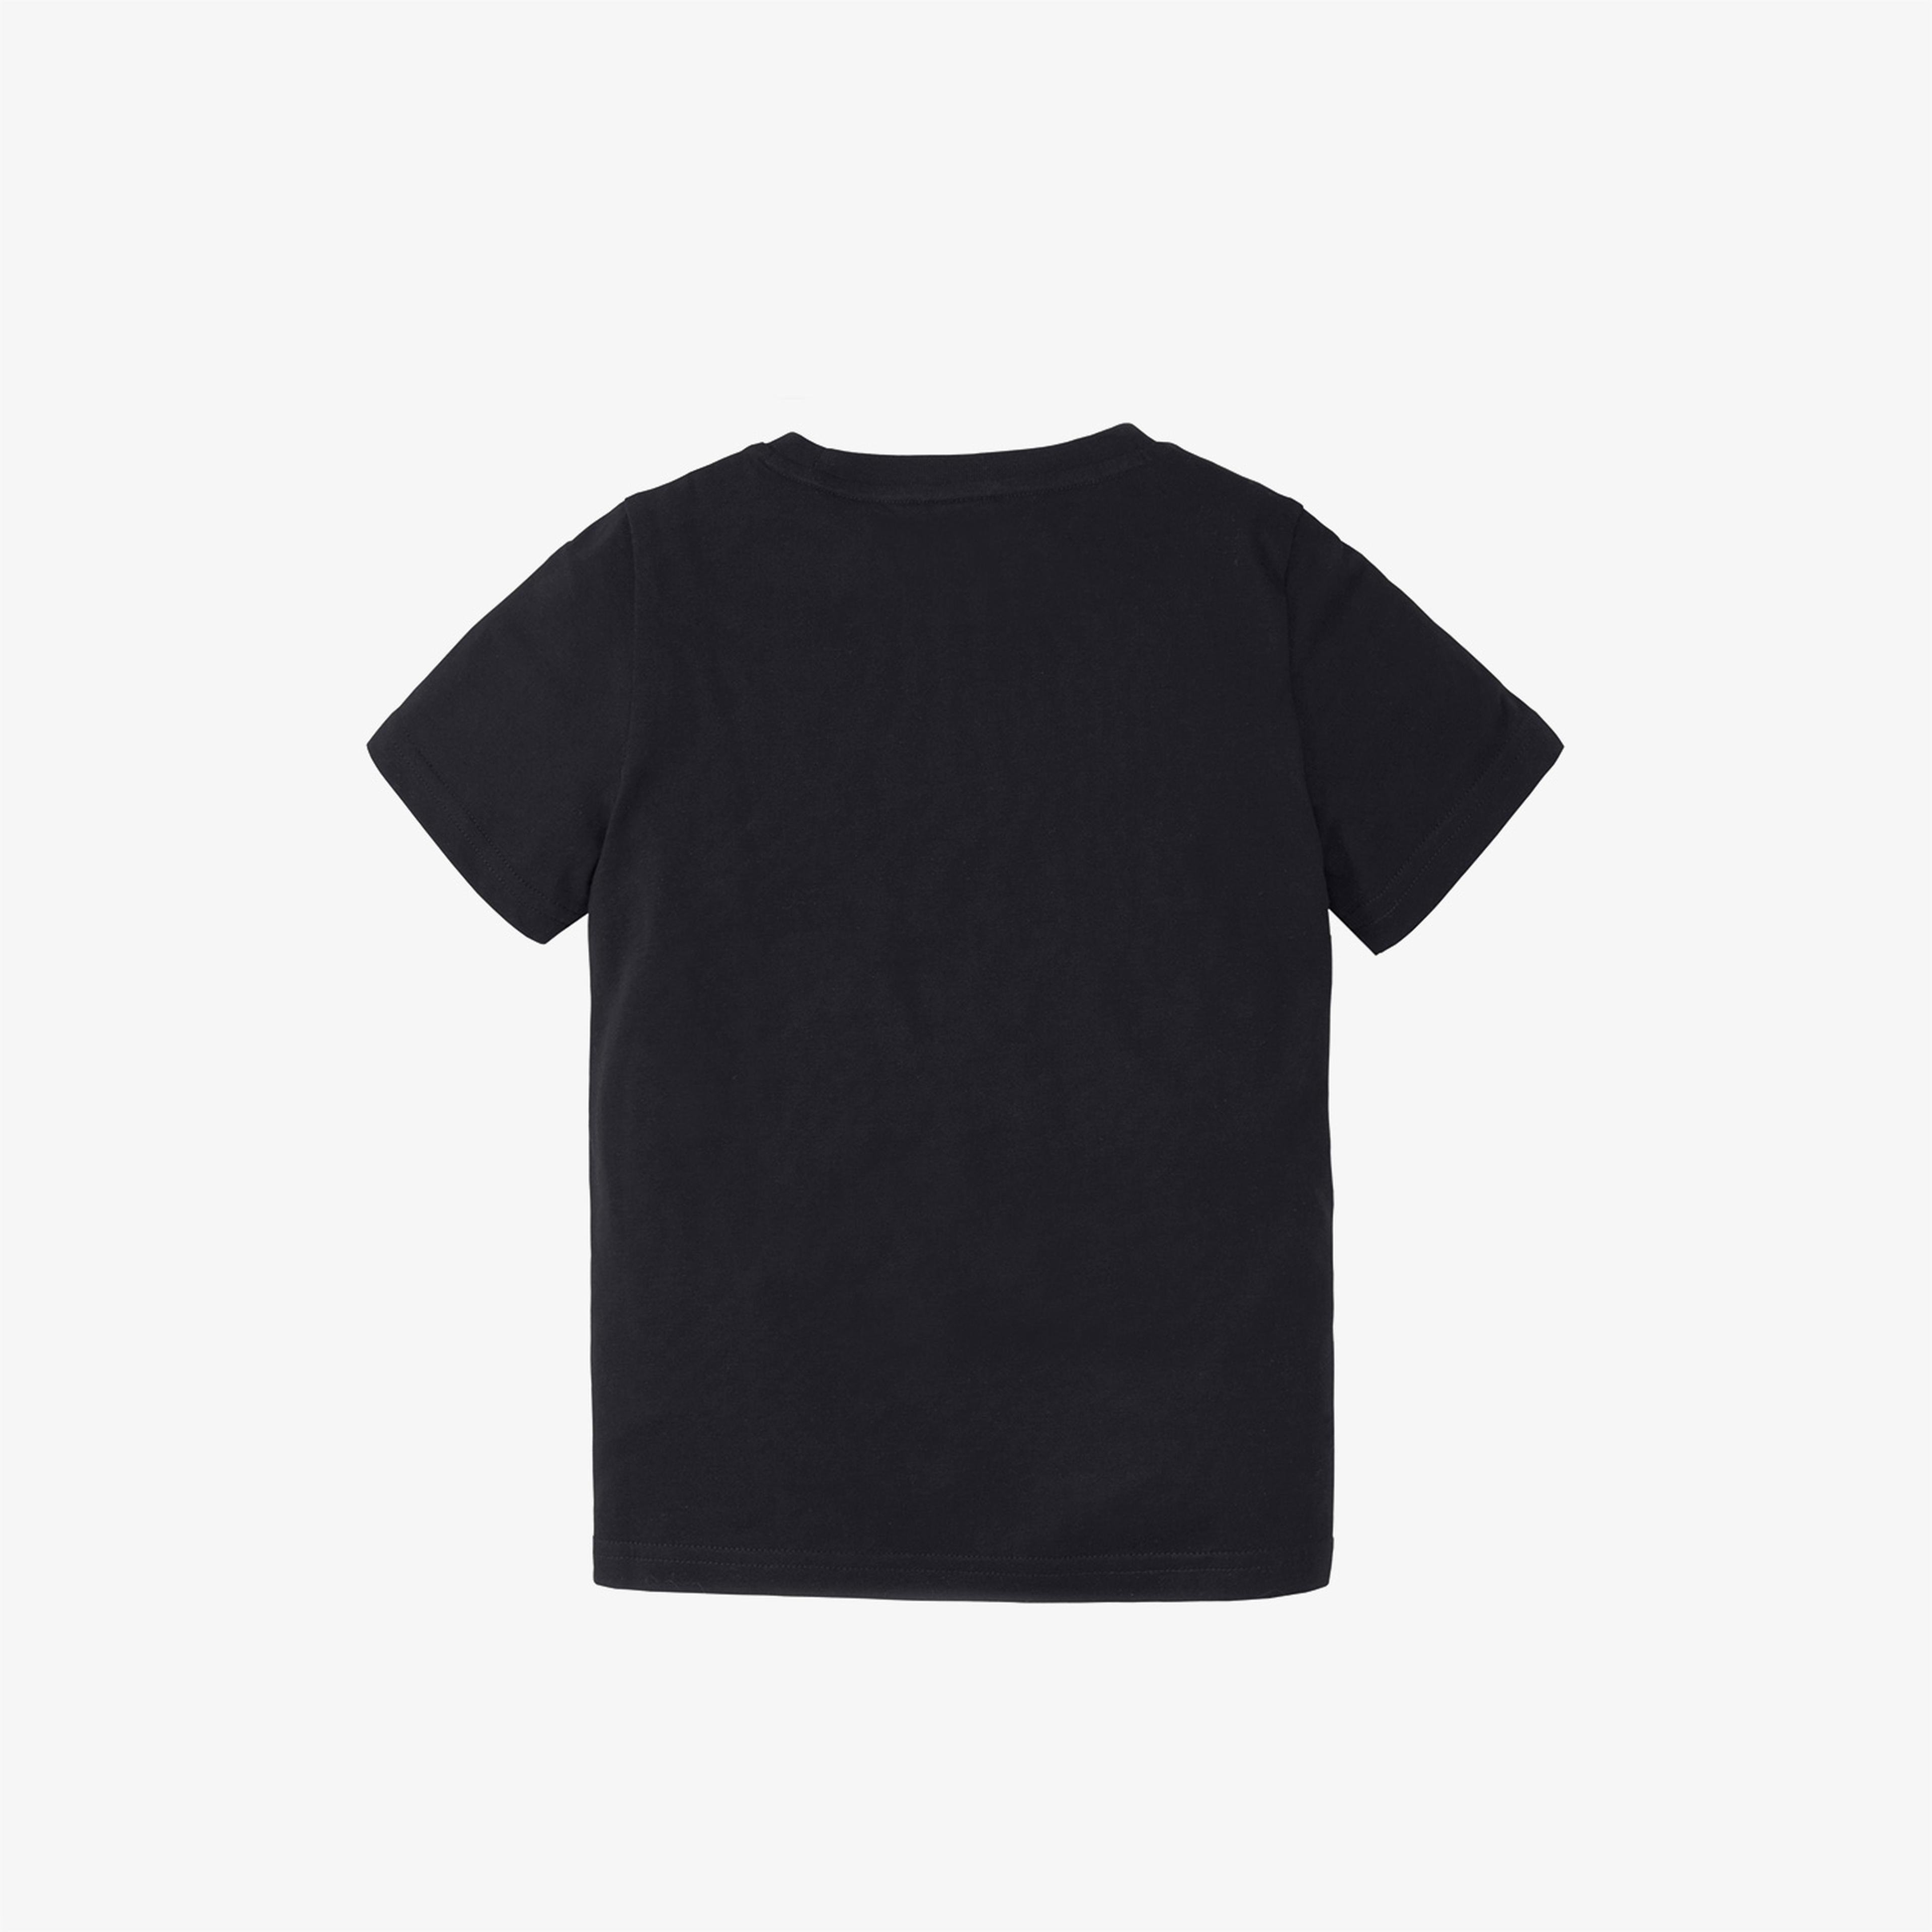 Puma Paw Çocuk Siyah T-Shirt